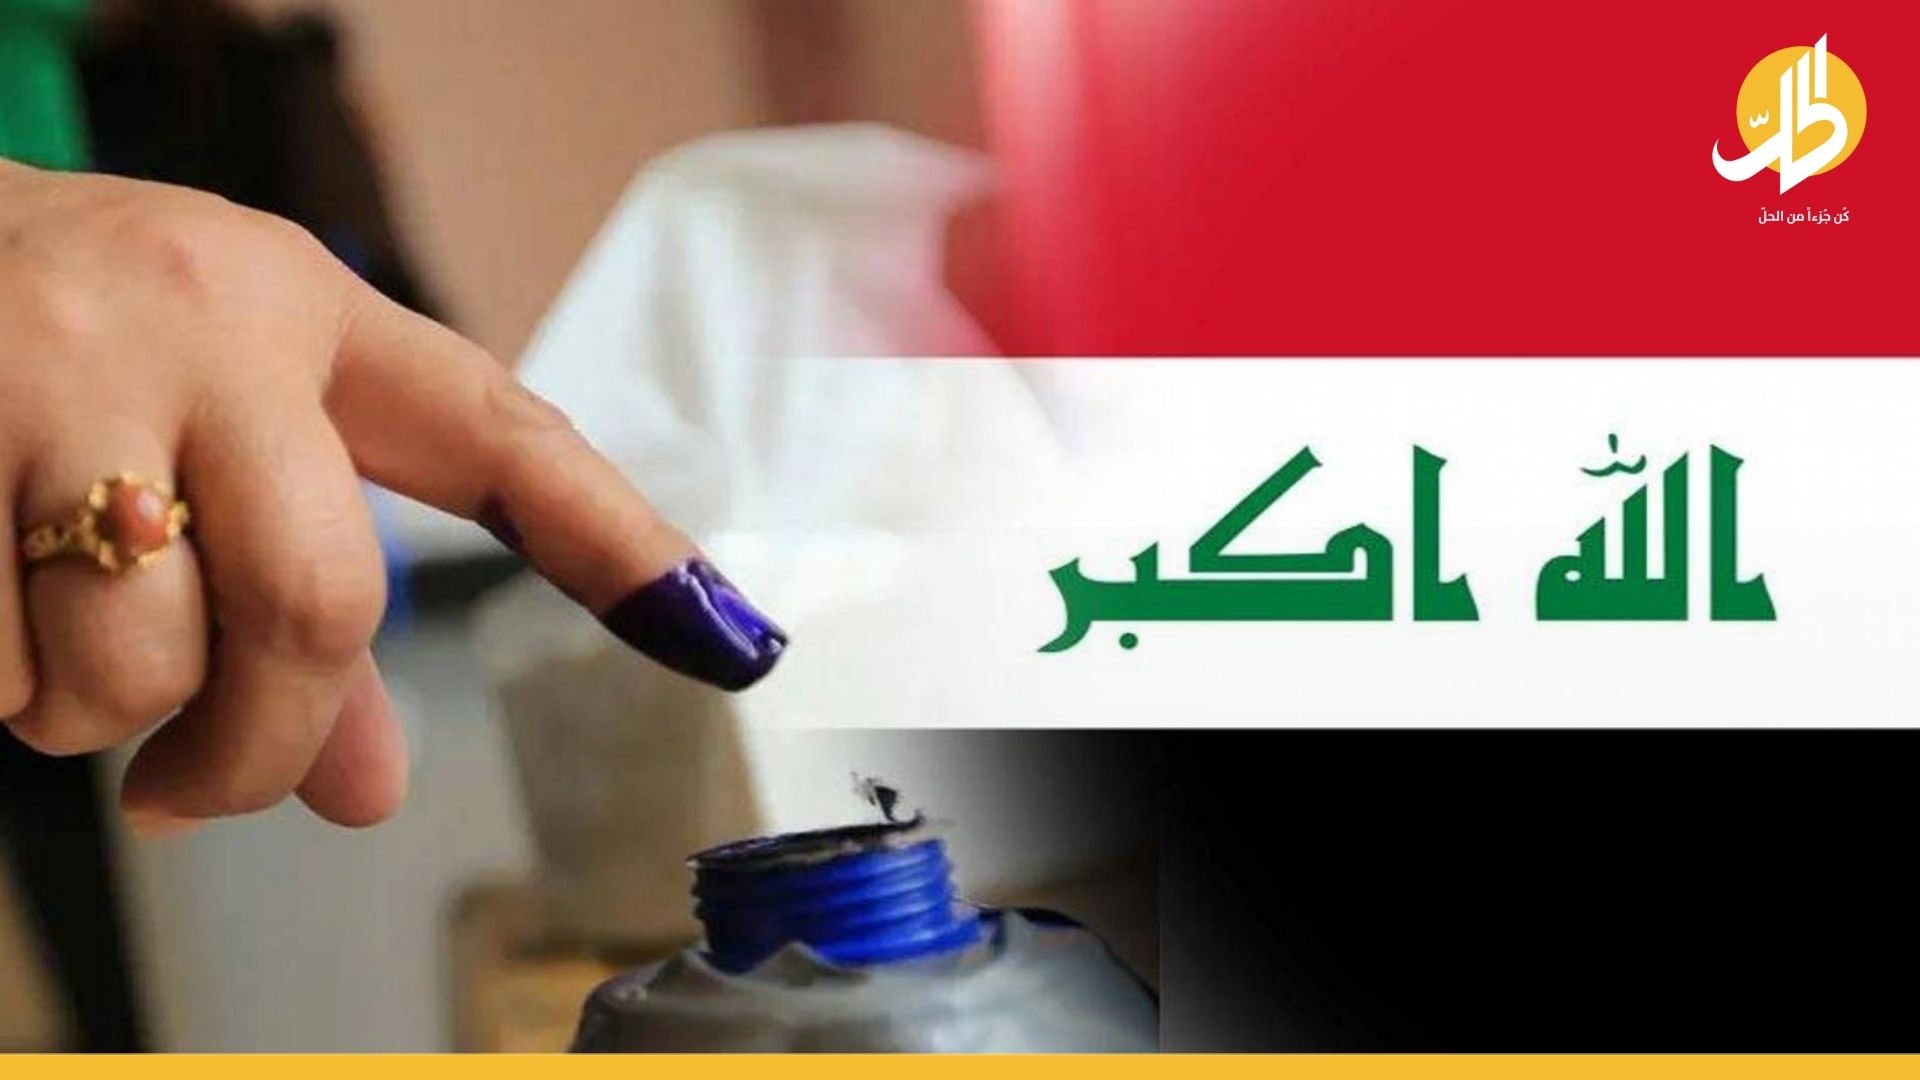 مفوضيــة الانتخابات العراقــية تكشف عدد المقاعد التي ستتغير بعد الفرز اليدوي